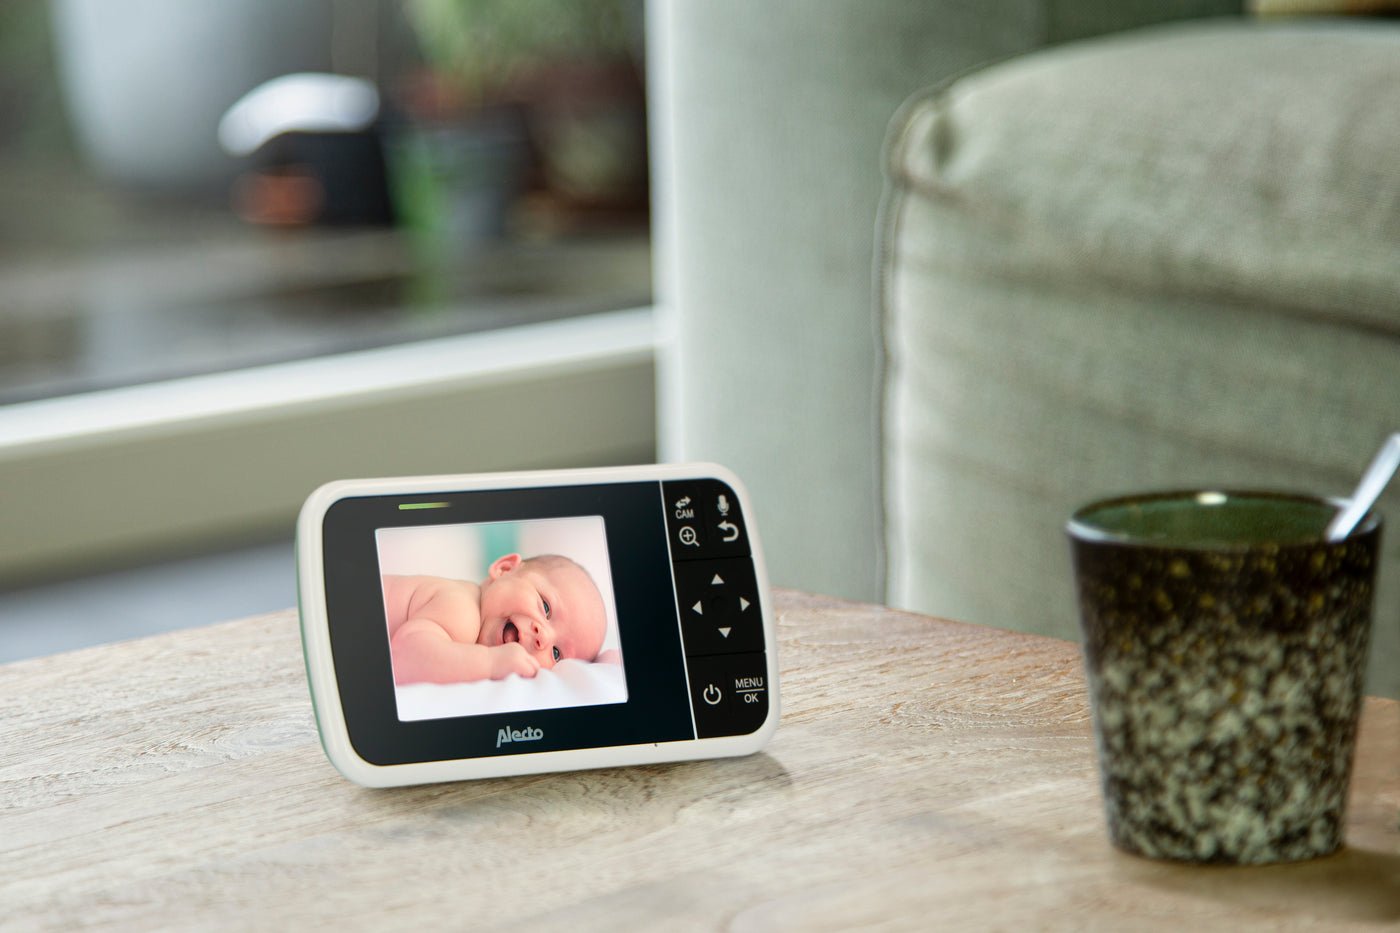 Alecto DVM135 - Babyphone avec caméra et écran couleur 3.5", blanc